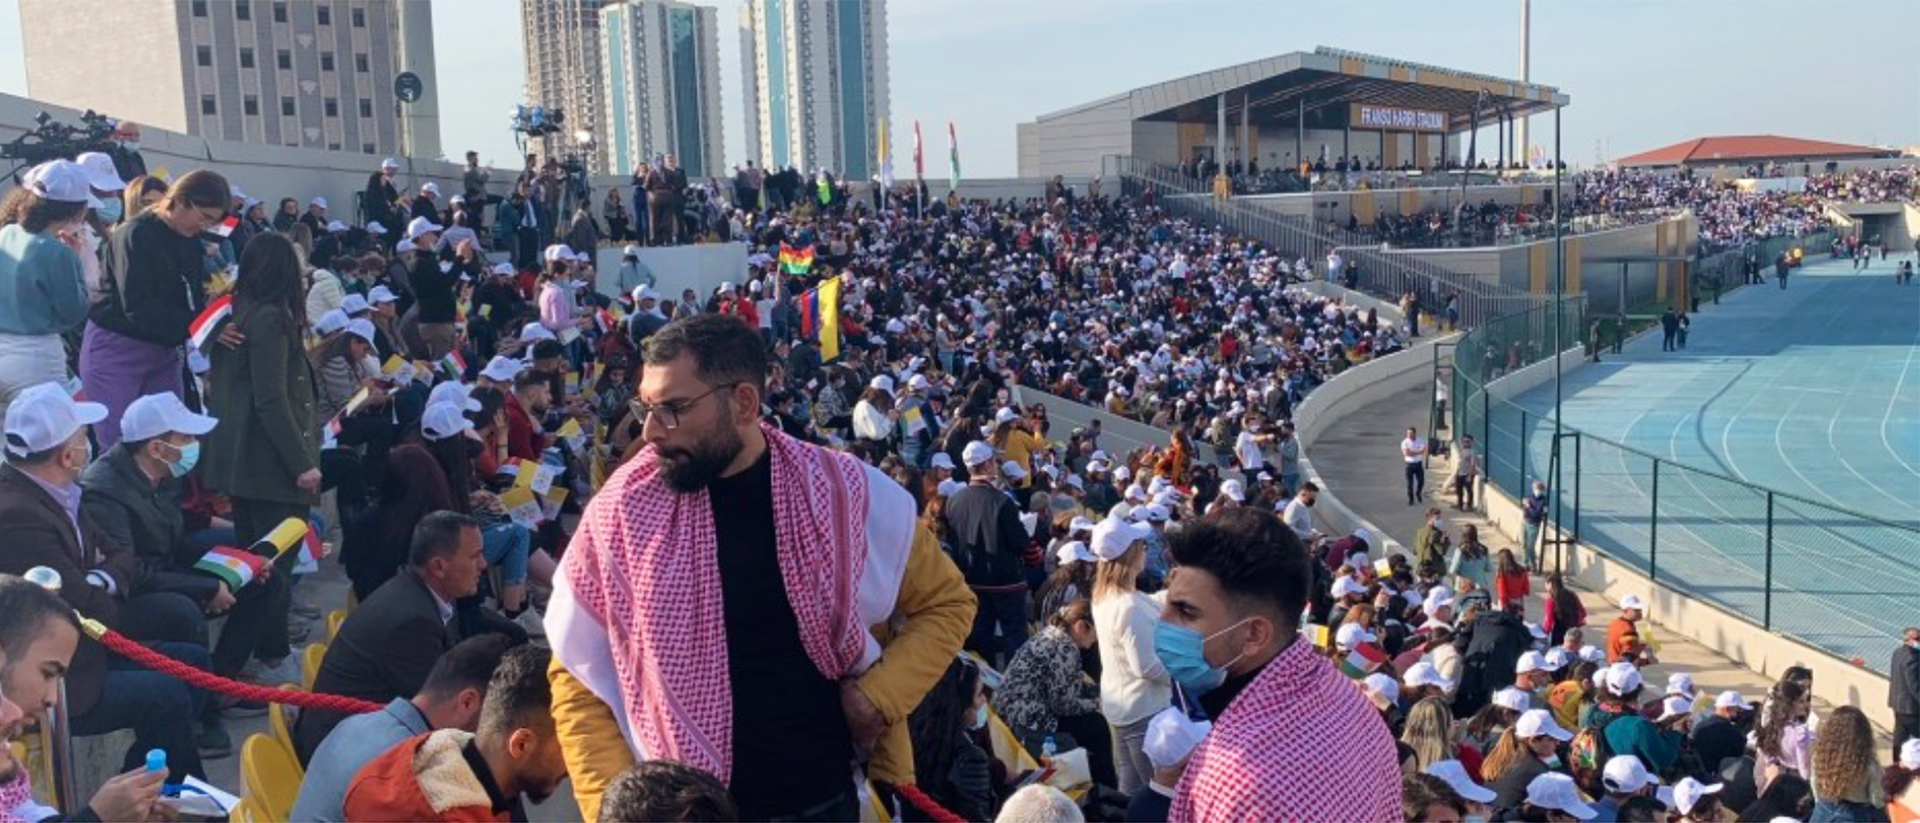 10'000 personnes rassemblées pour la messe au stade d'Erbil avec le pape, le 7 mars 2021 | © Arthur Herlin - I.Media